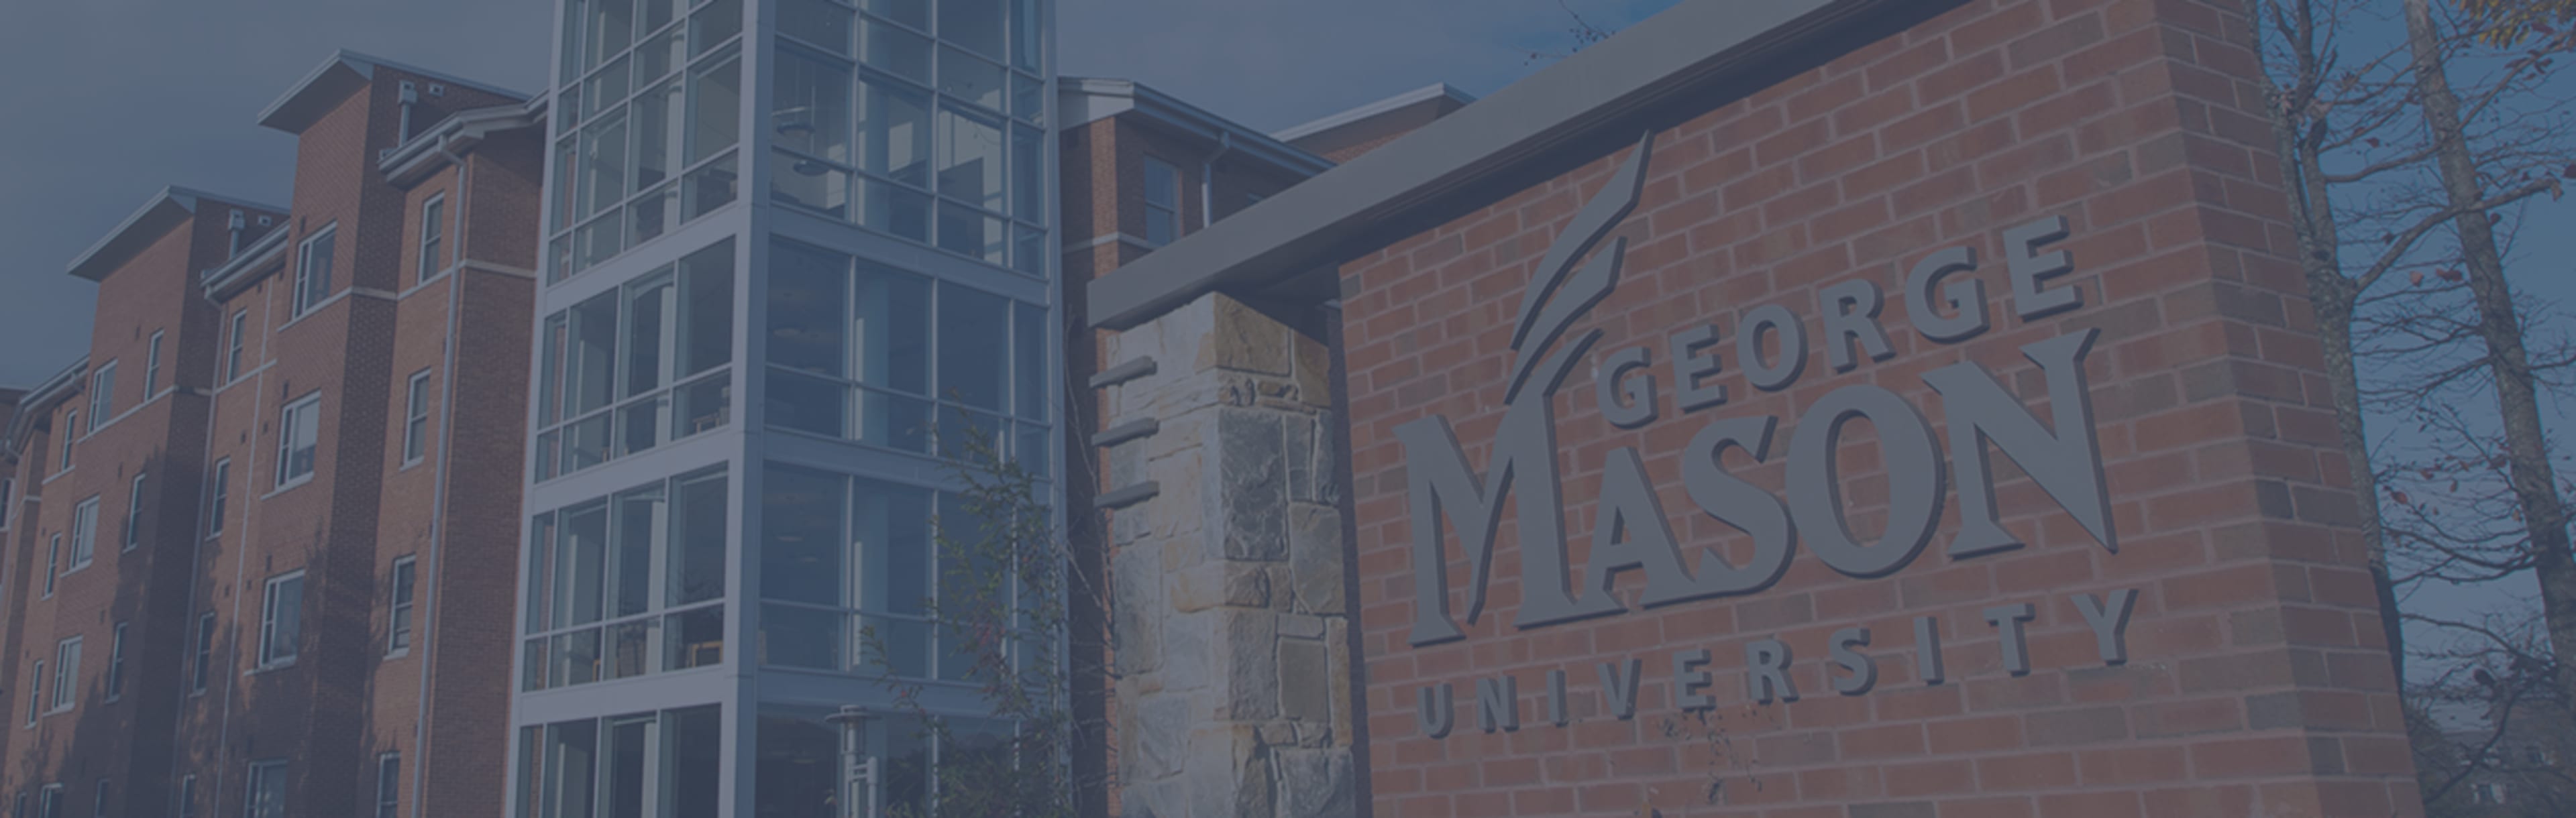 George Mason University Online Master of Education in Special Education, specializzato in Analisi del comportamento applicata